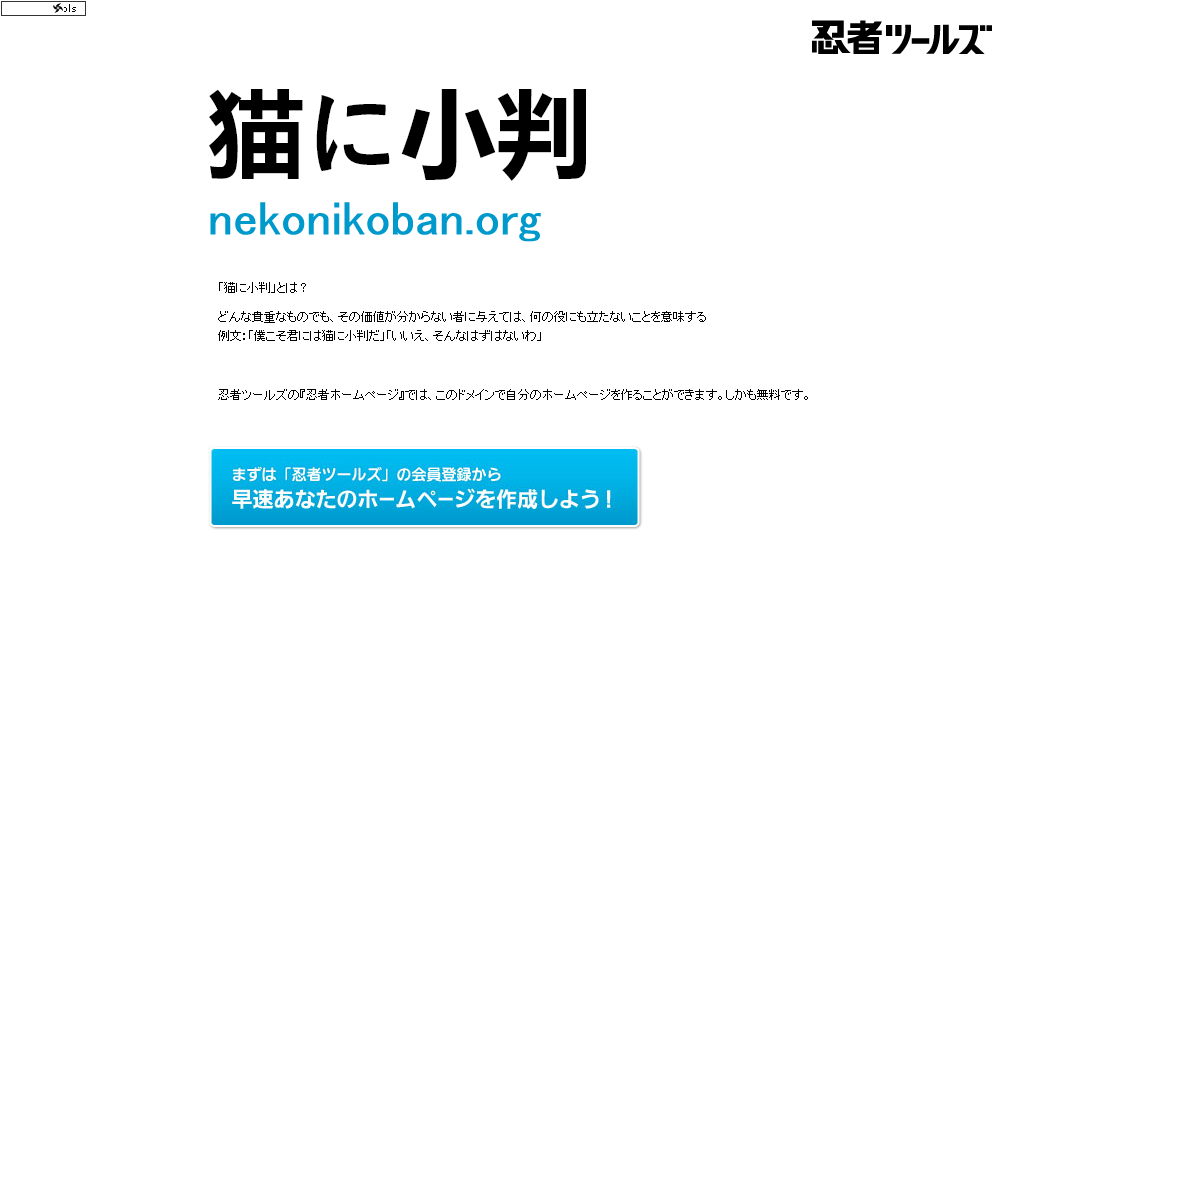 A complete backup of nekonikoban.org